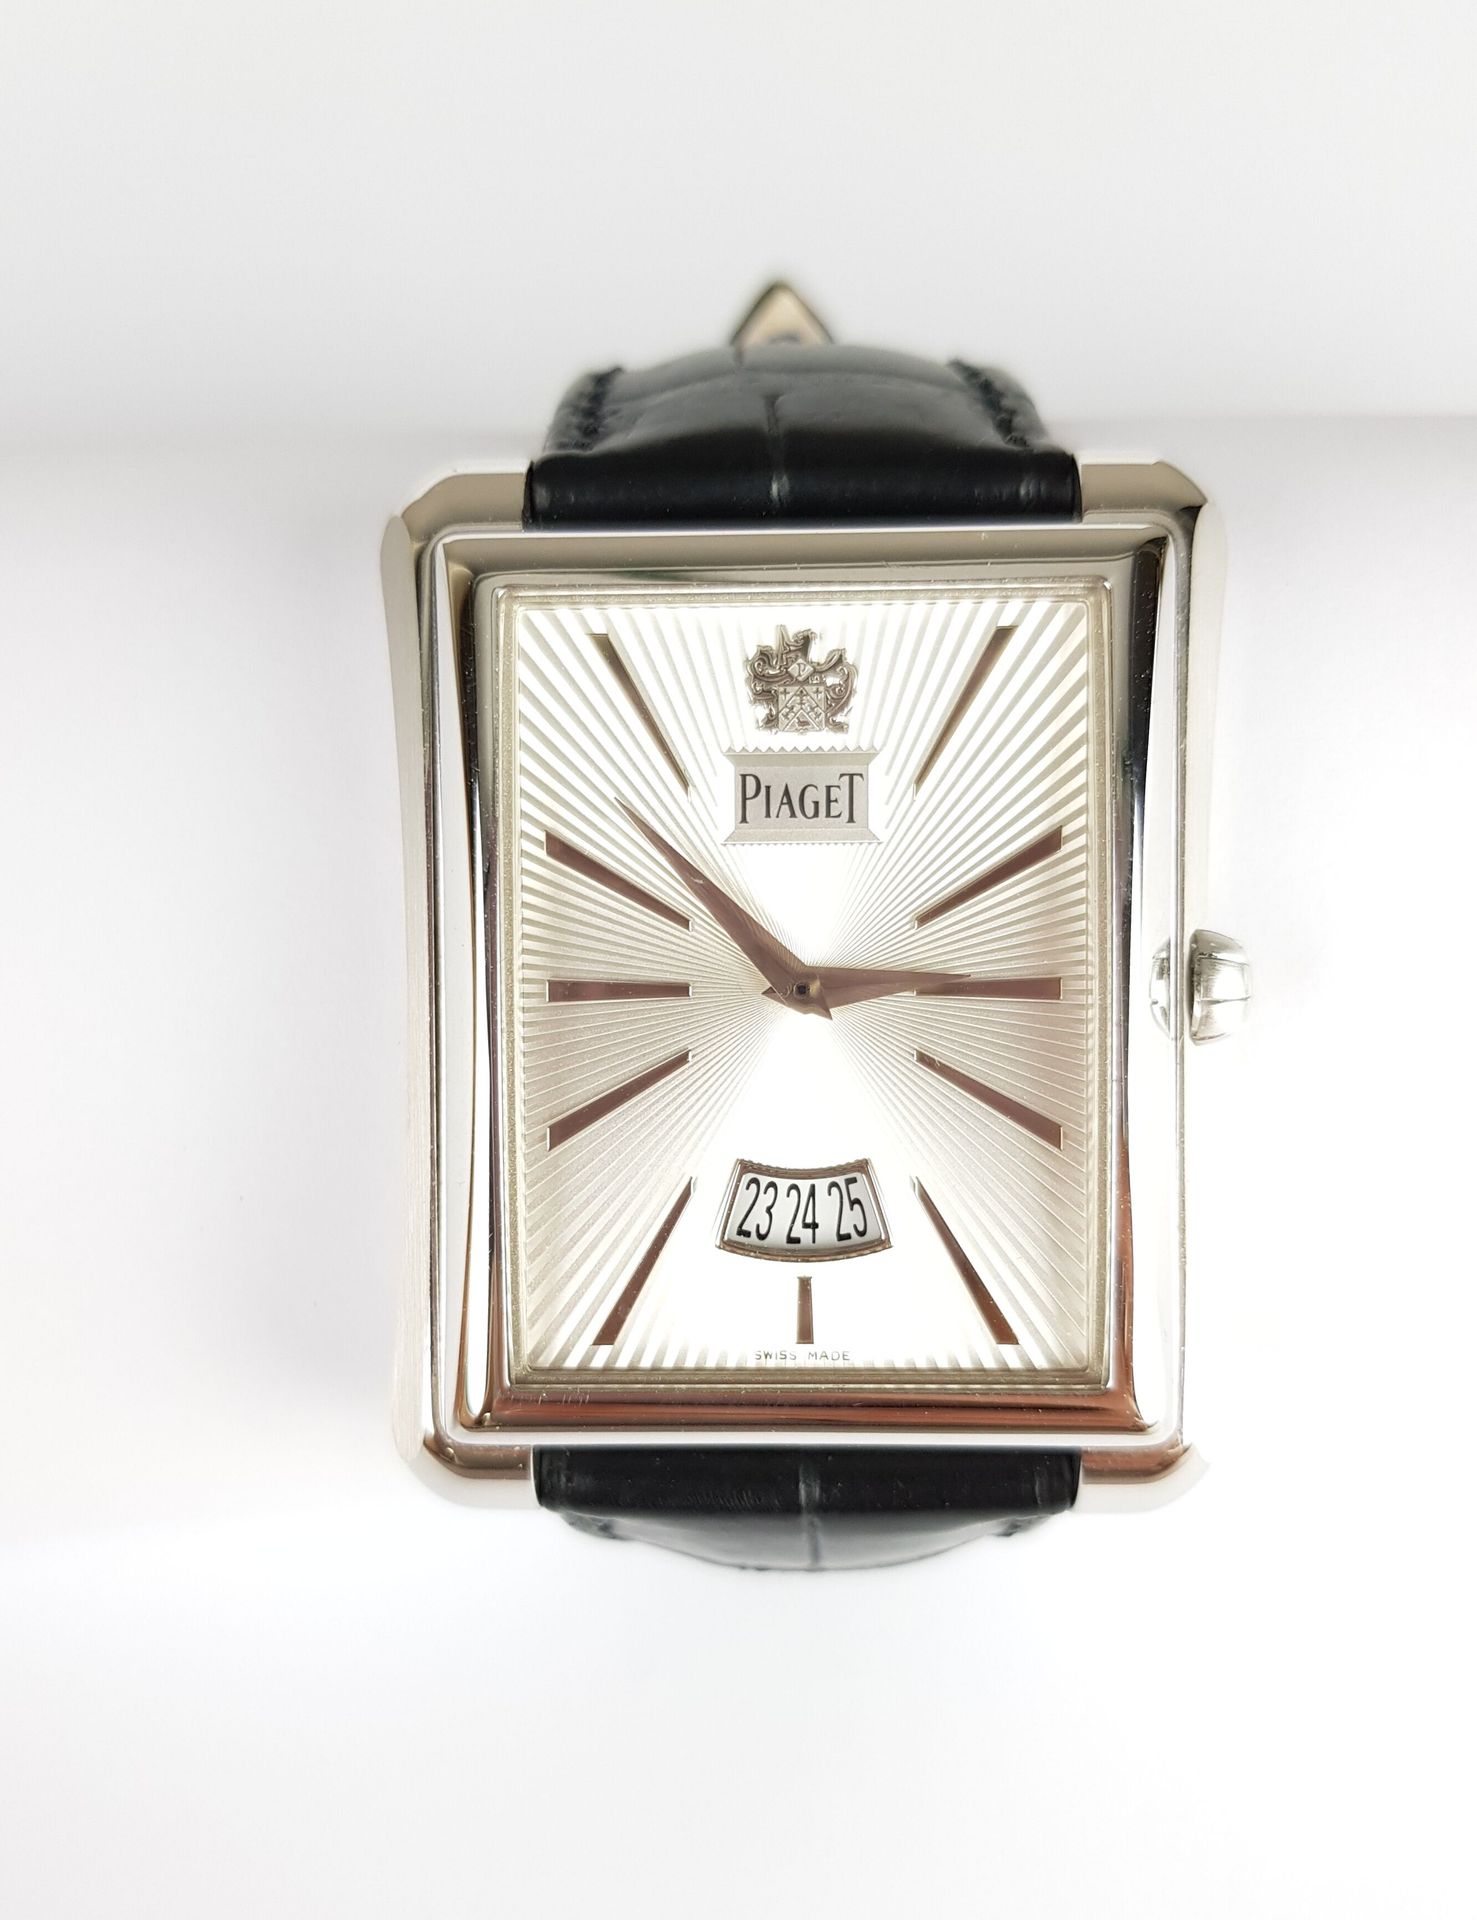 Null Precio : 3 000 euros

PIAGET

Emperador

Reloj de oro blanco de 750 milésim&hellip;